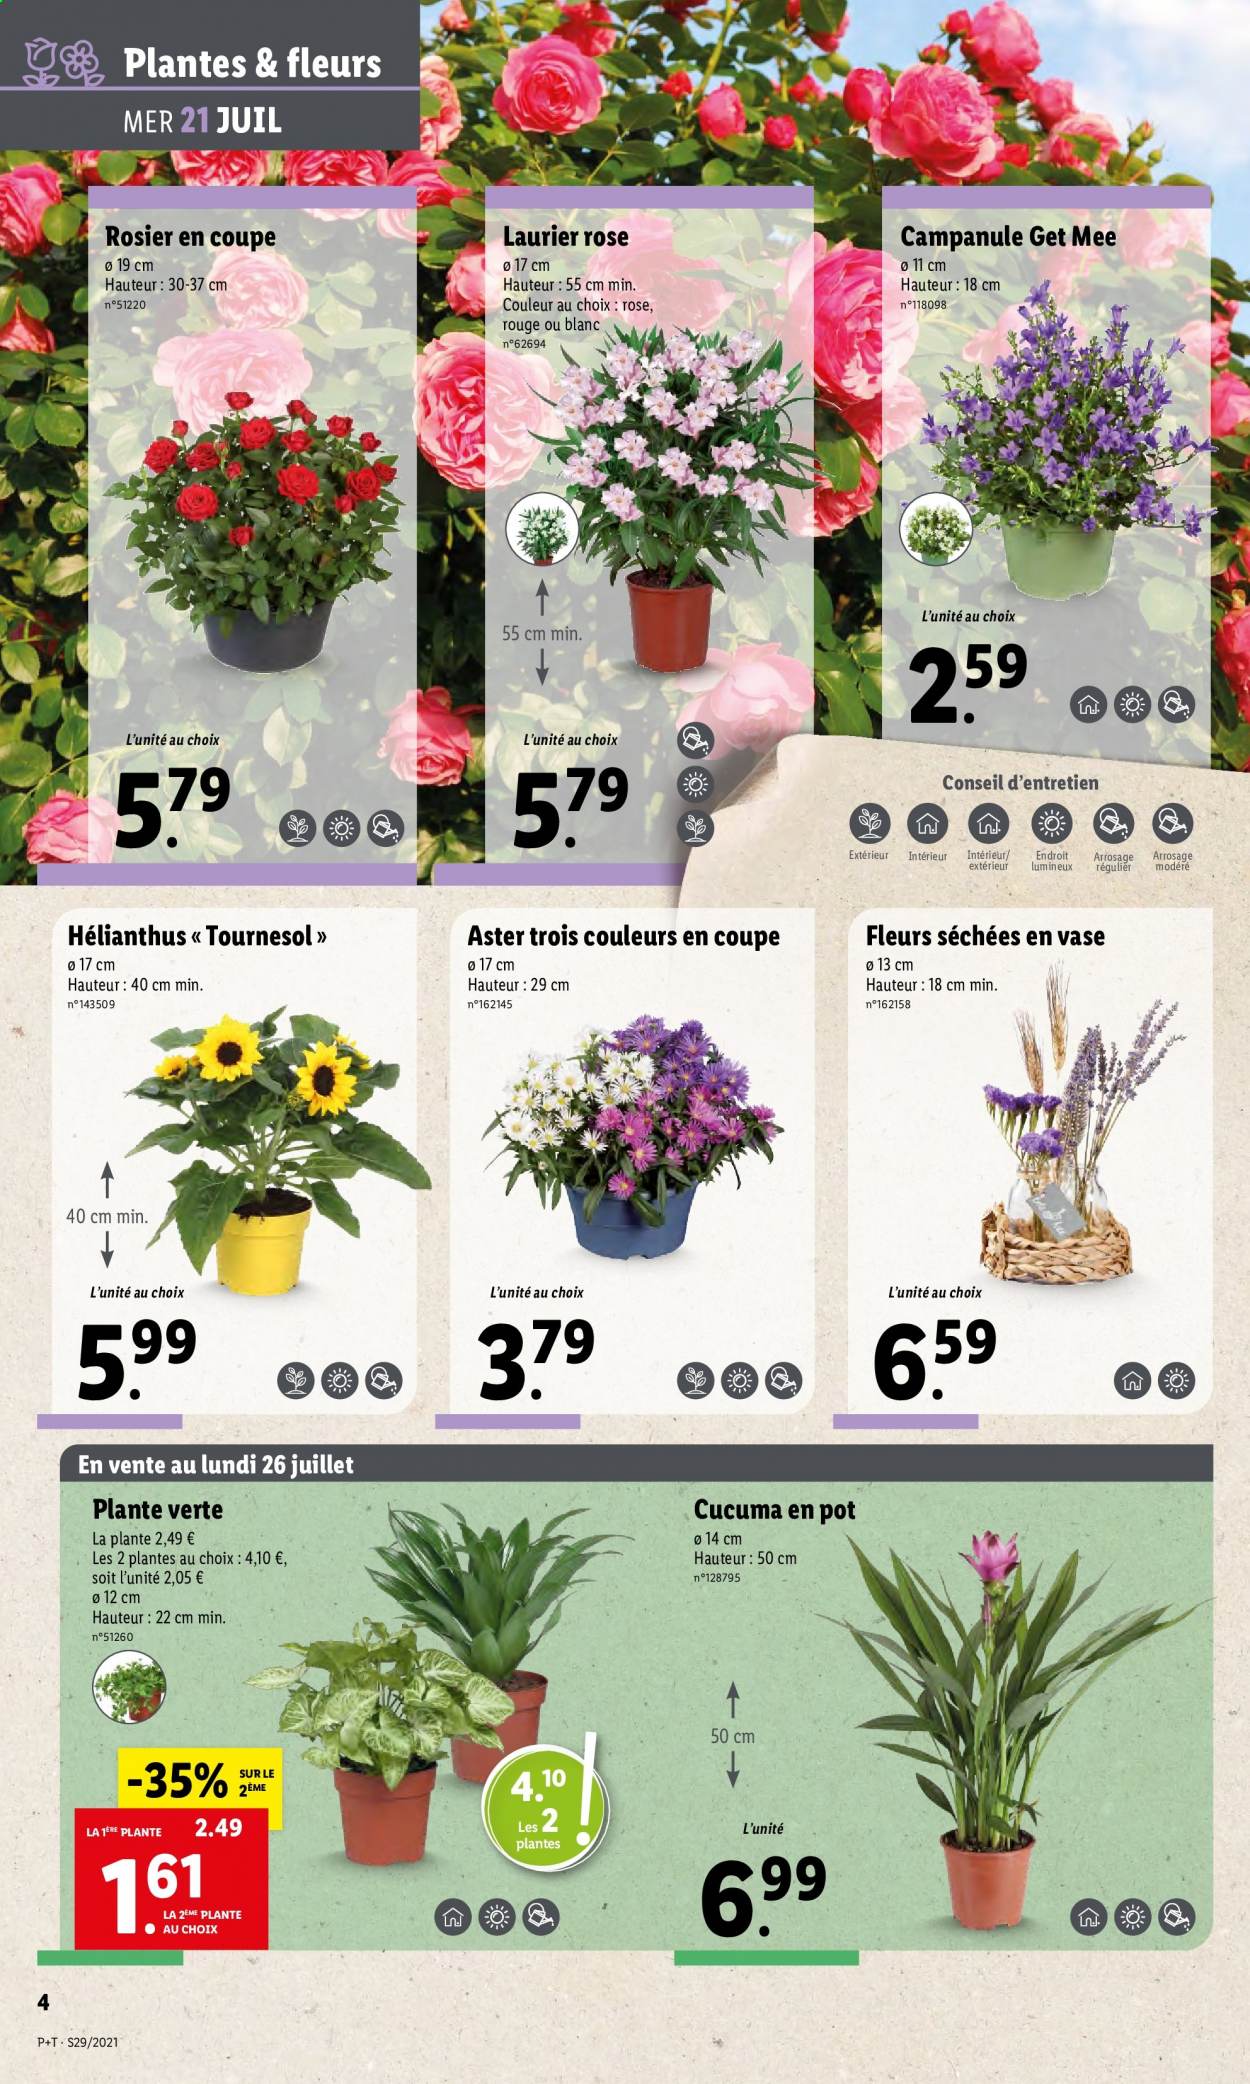 thumbnail - Catalogue Lidl - 21/07/2021 - 27/07/2021 - Produits soldés - fleur, plantes vertes, laurier rose, rosier. Page 4.